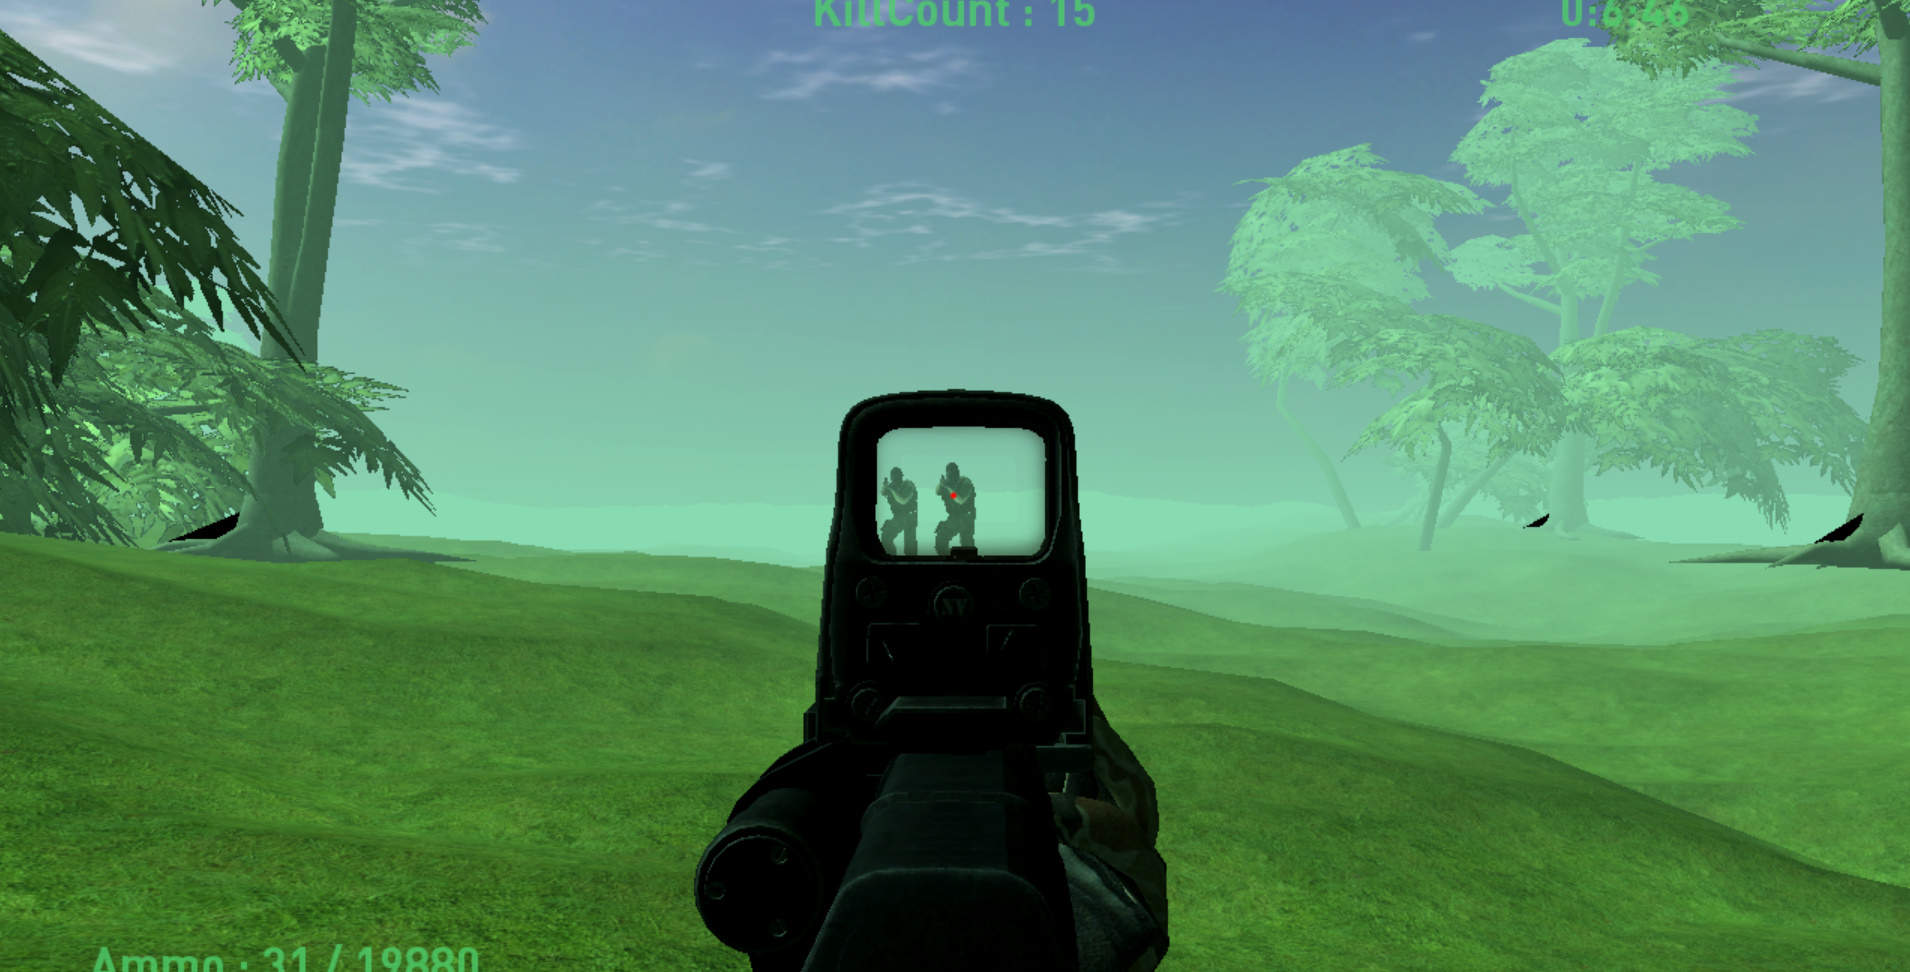 JungleShoot screenshot